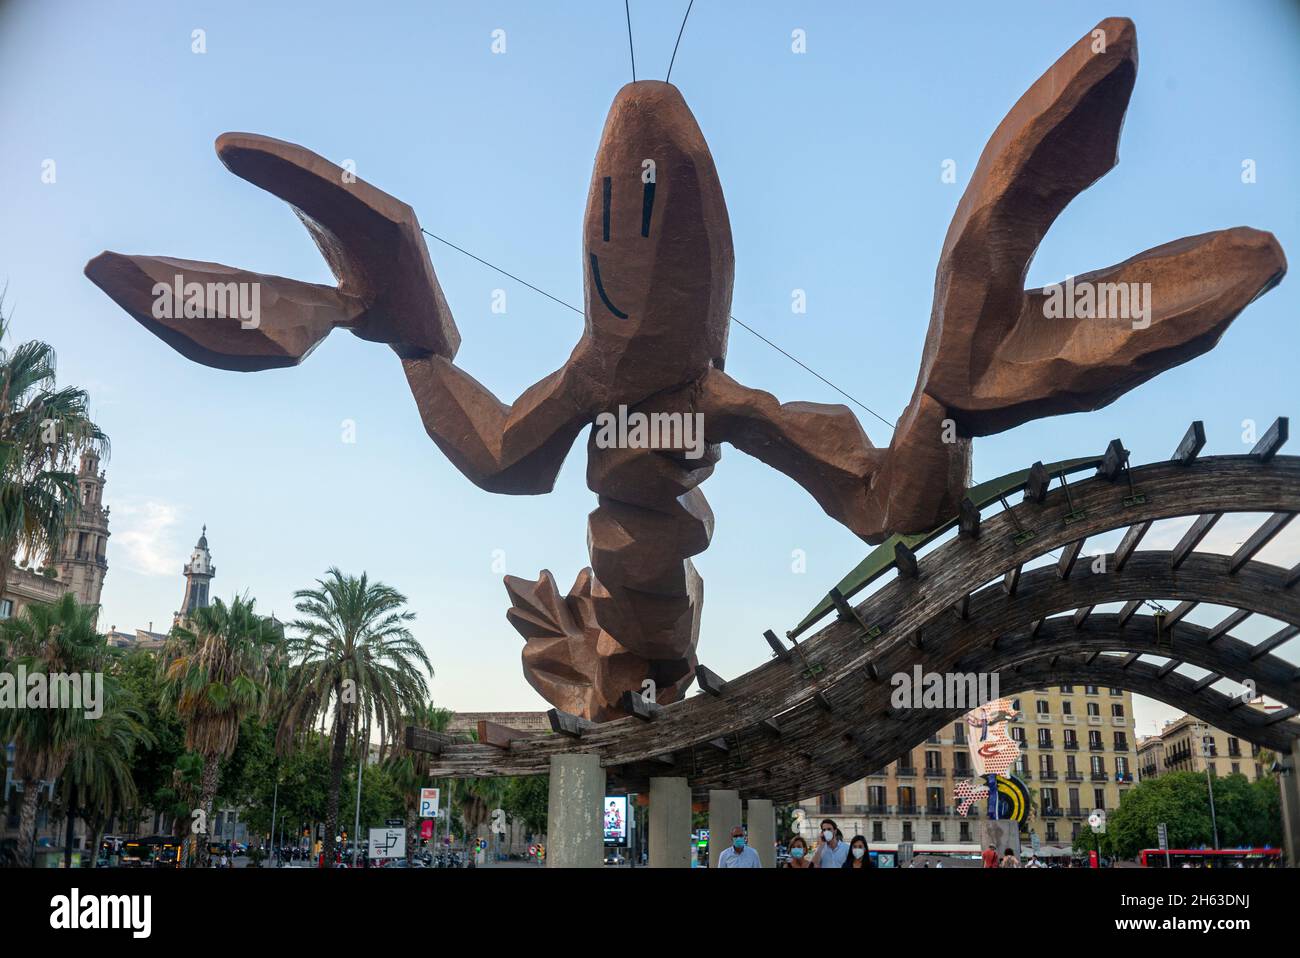 gambrinus - sculpture de homard géante la plus heureuse avec de grands pinces et un sourire gai sur passeig de colom au port olympique, barcelone, espagne Banque D'Images